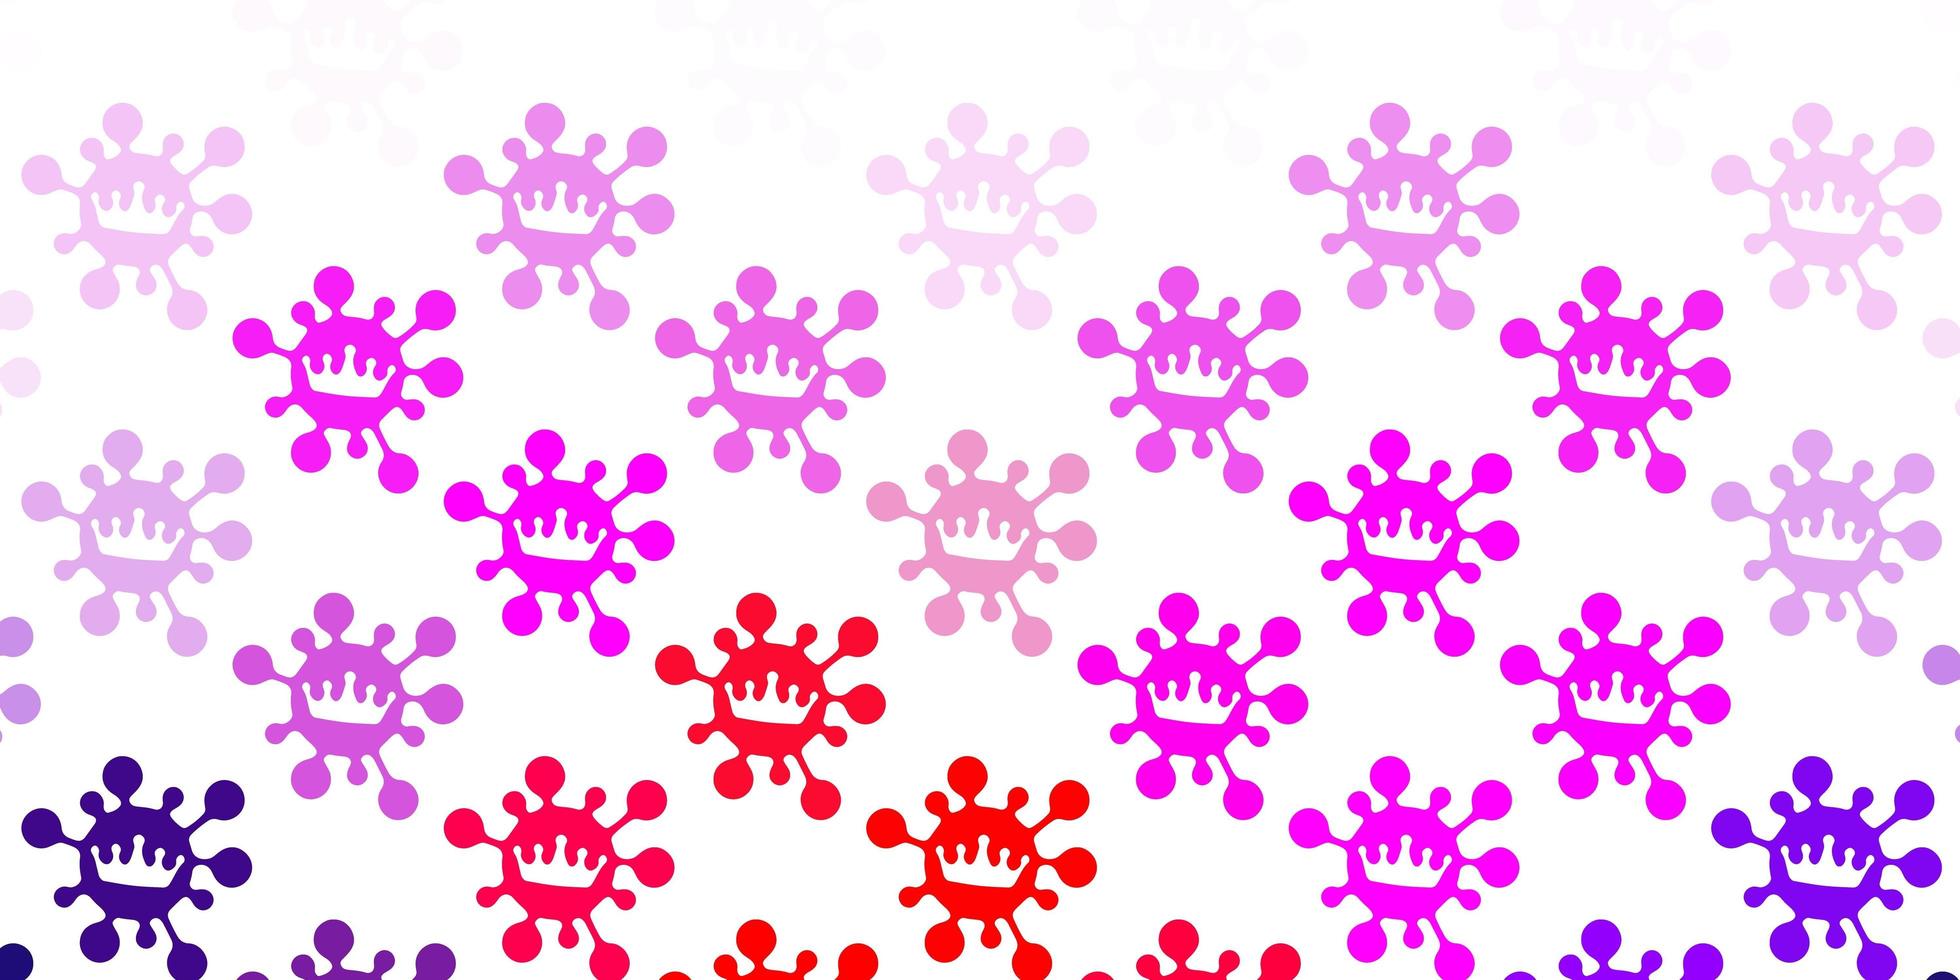 lichtpaarse, roze achtergrond met covid-19 symbolen. vector